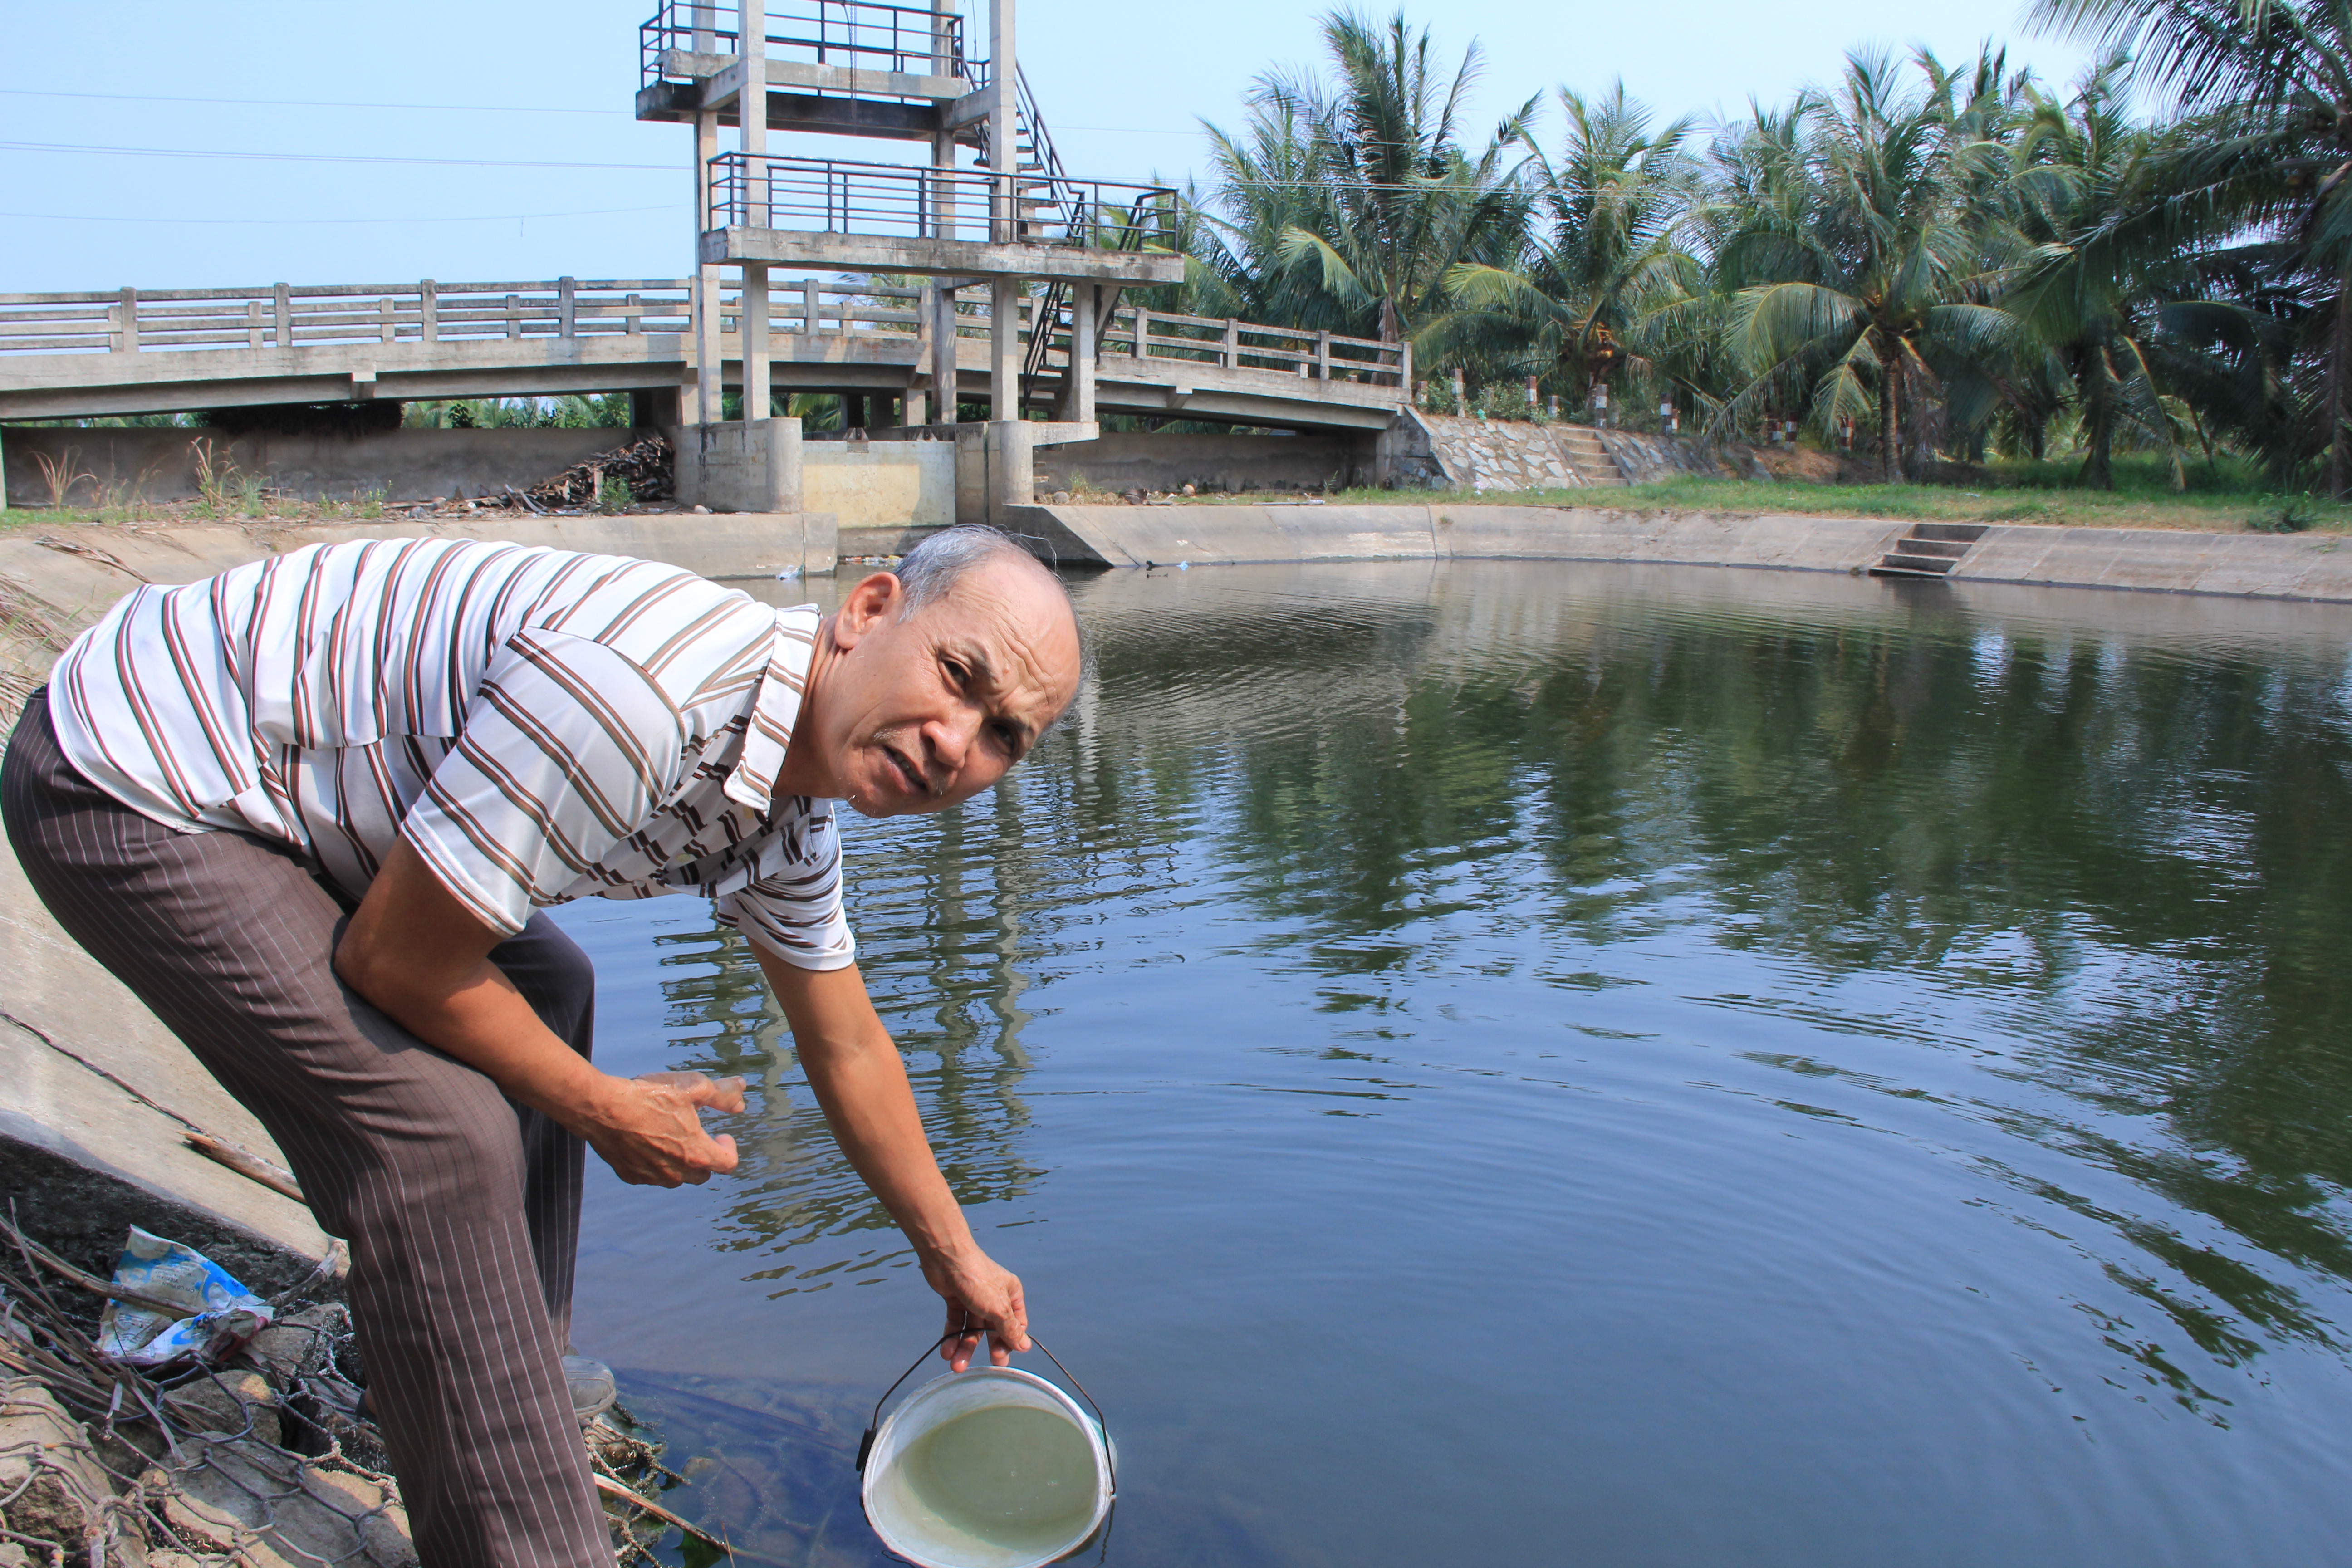 Người dân khu vực đê bao Đìa Dứa vẫn sử dụng được nước sông bình thường	- Ảnh: Phượng Vỹ